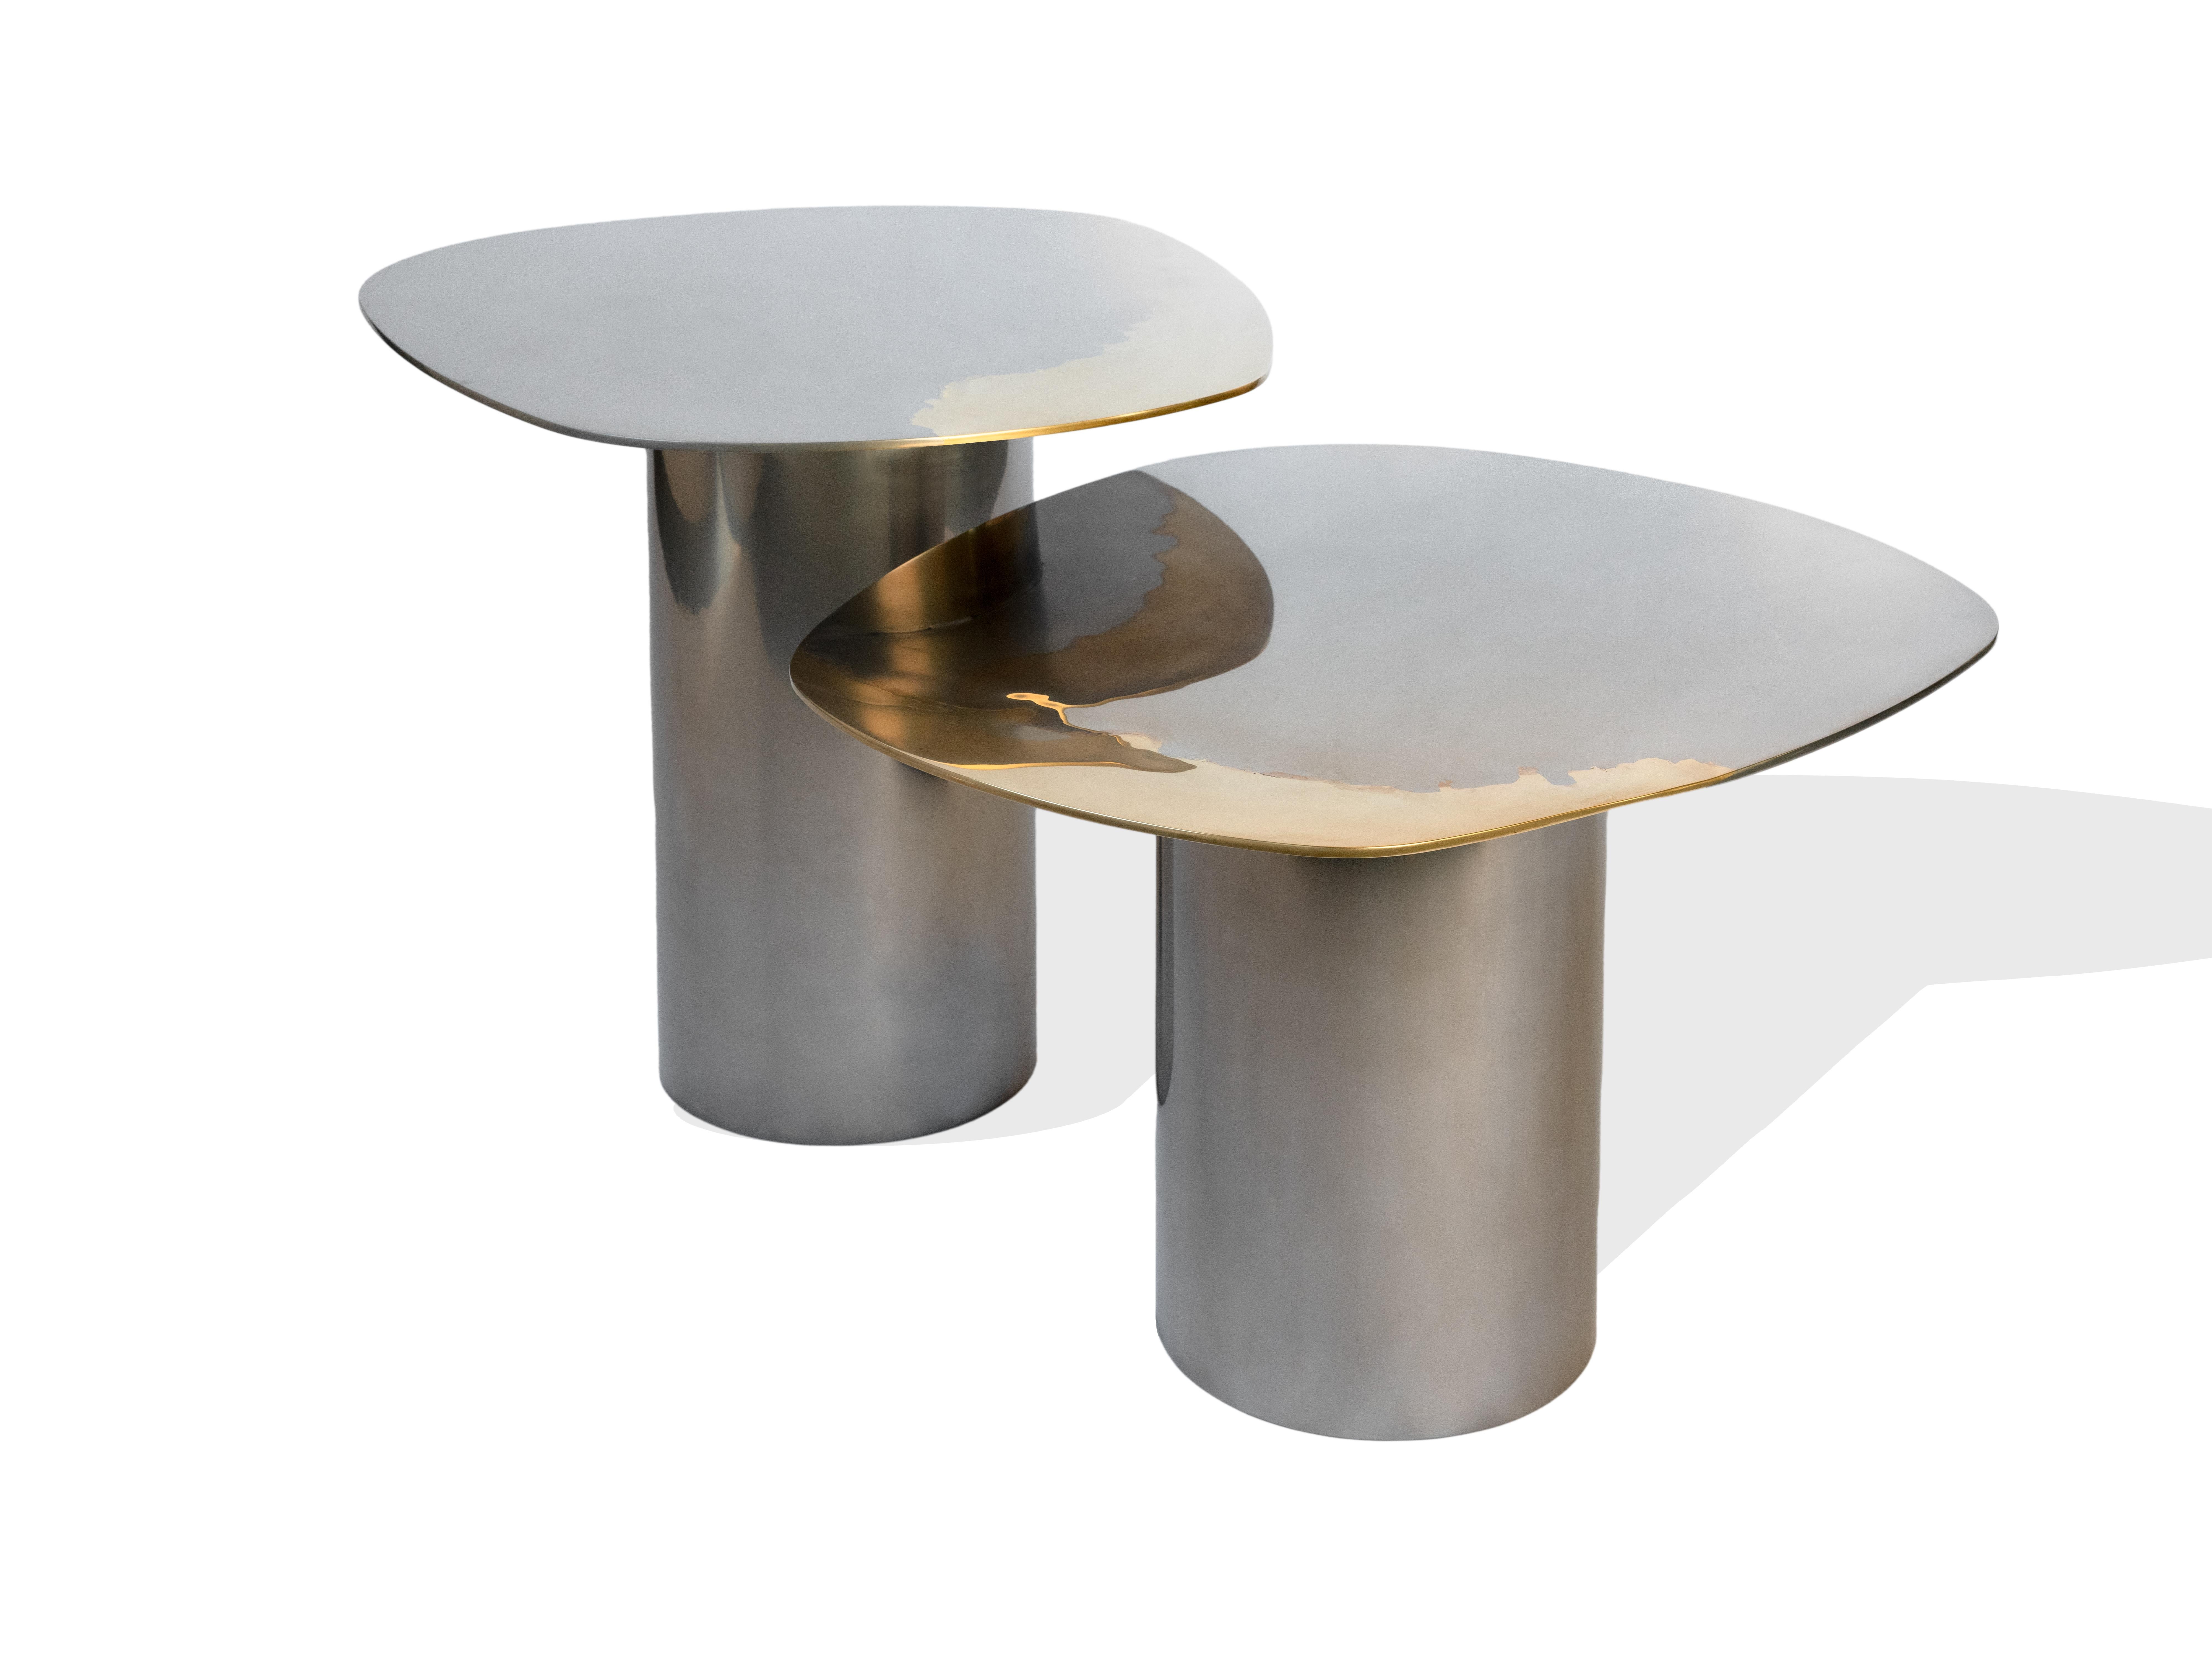 Ein maßgefertigtes Set von 3 Tischen als Teil der Transition-Kollektion mit einzigartigen, künstlerisch gestalteten, spiegelpolierten Tischplatten, die aus Messing und Edelstahl auf Rohrgestellen gefertigt sind. 

Produktgrößen:
2 x 30